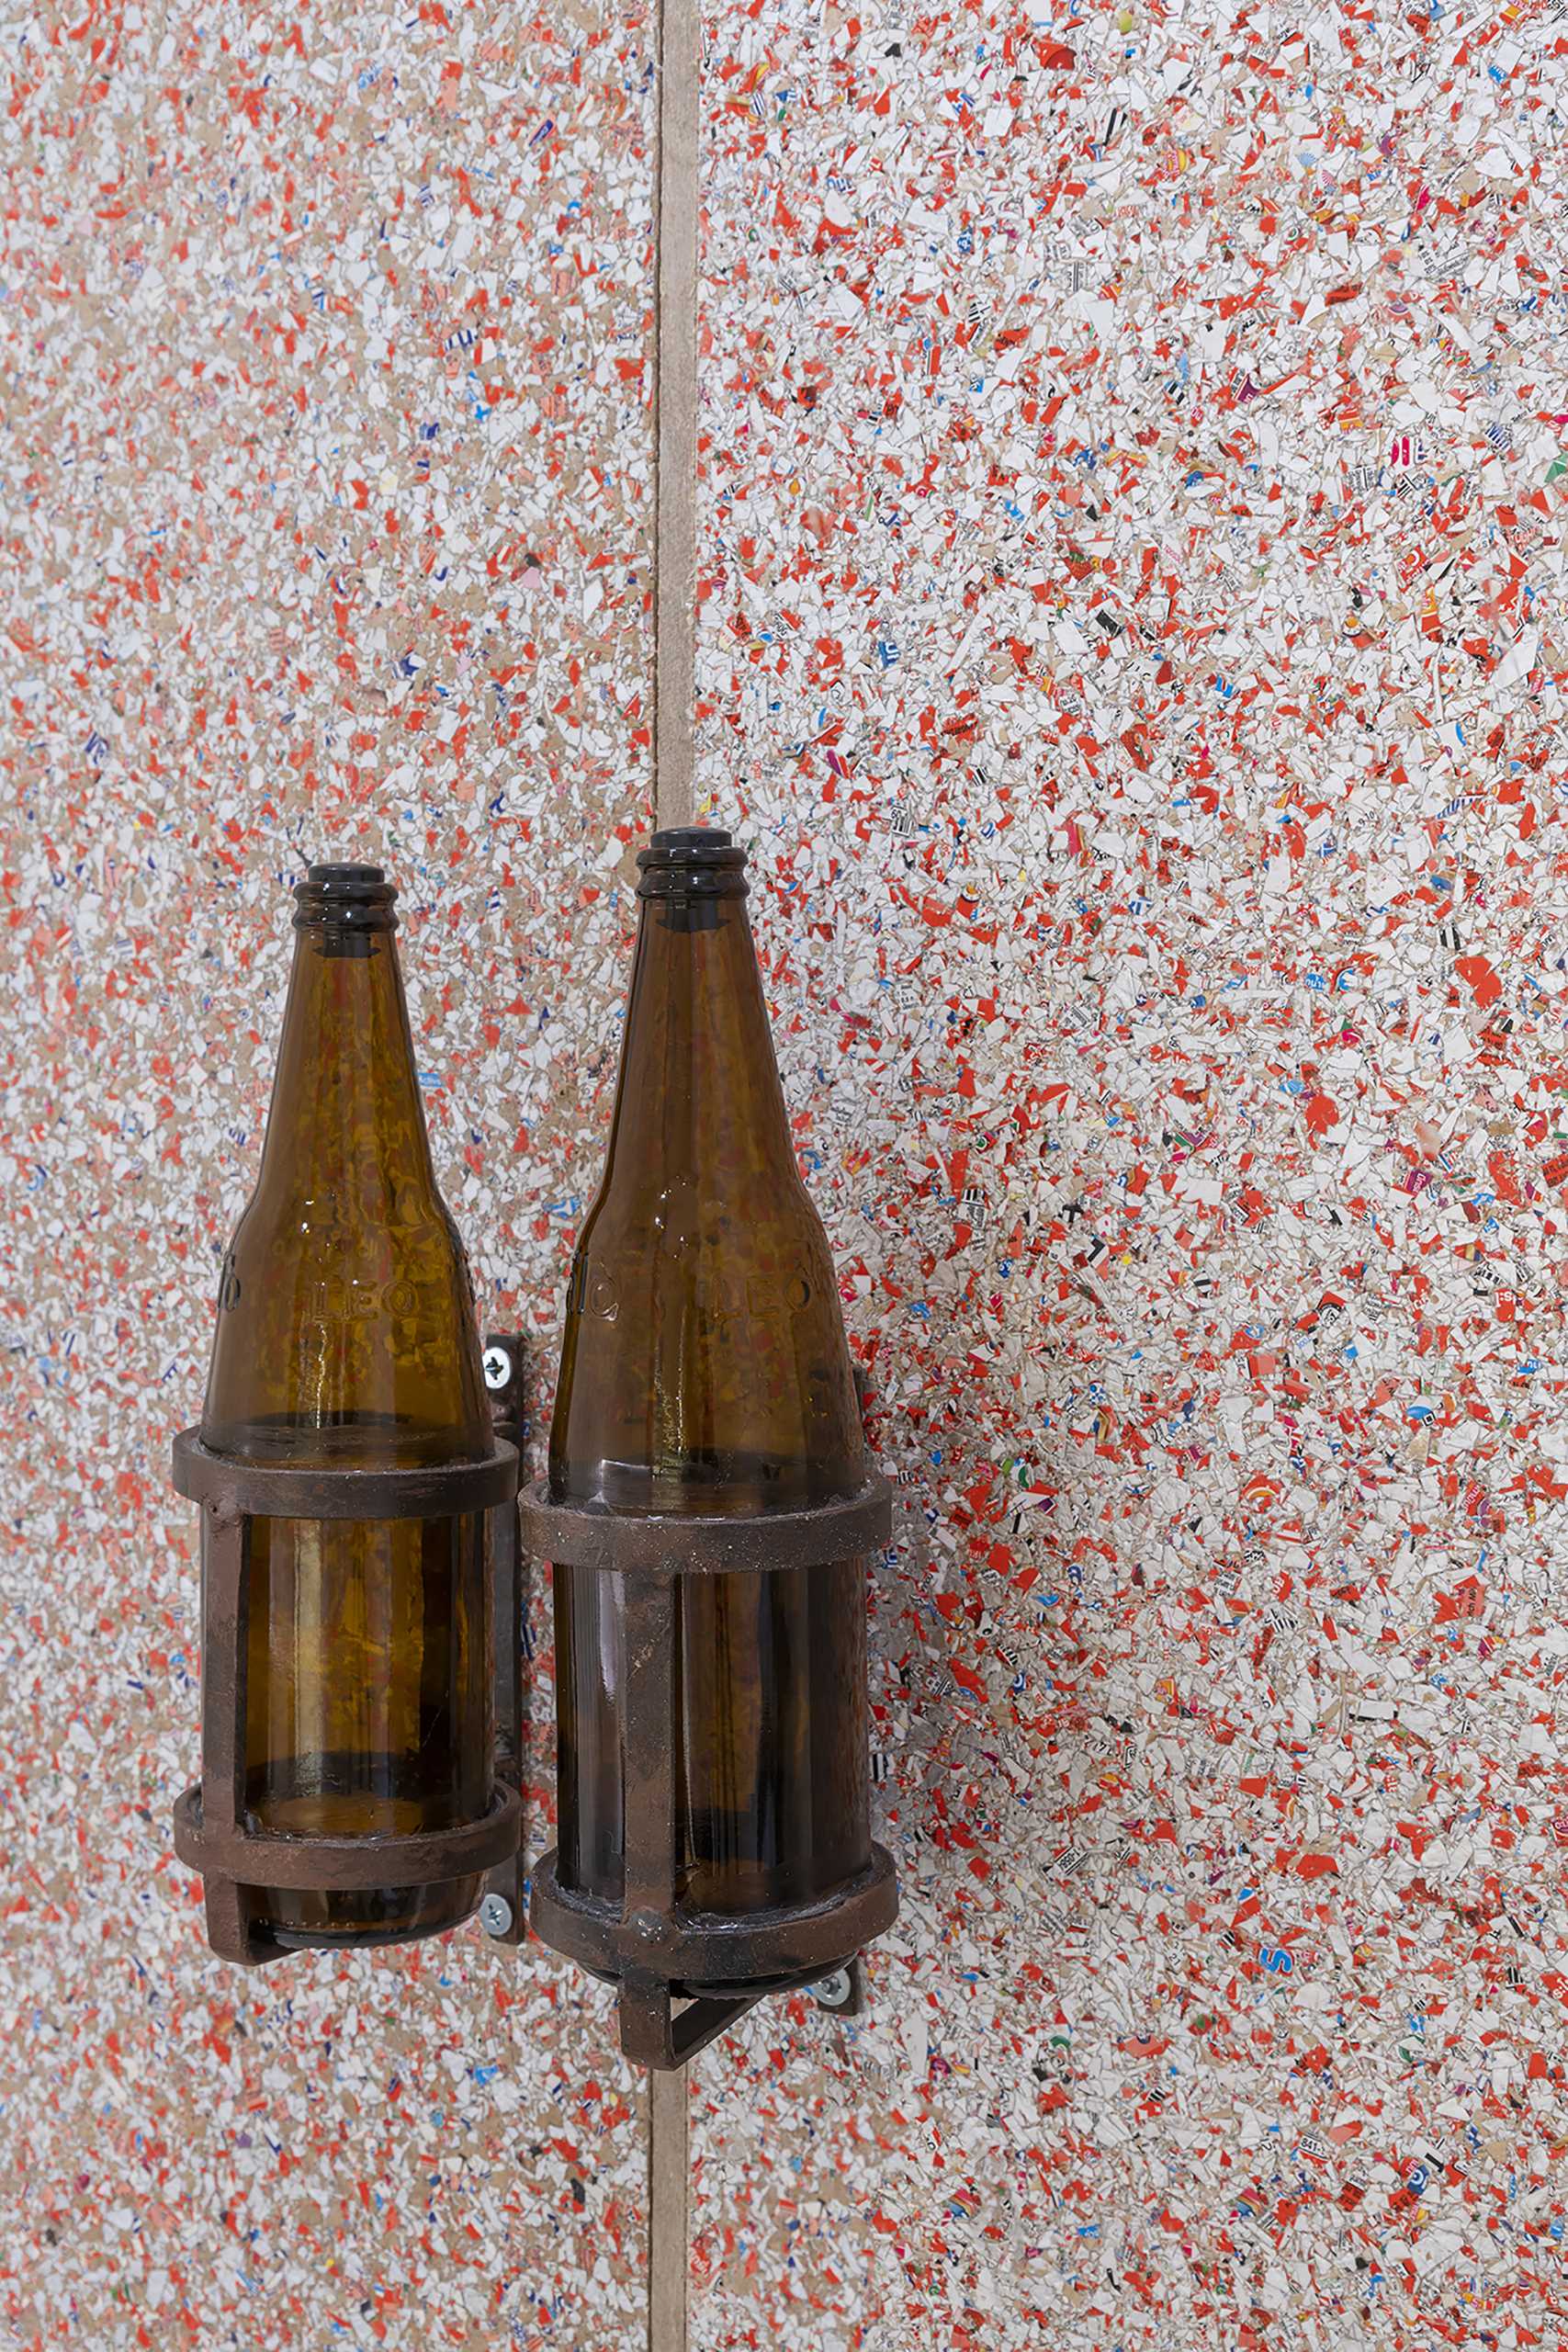 بطری های آبجو بازیافتی به ،وان دستگیره درب استفاده می شود.